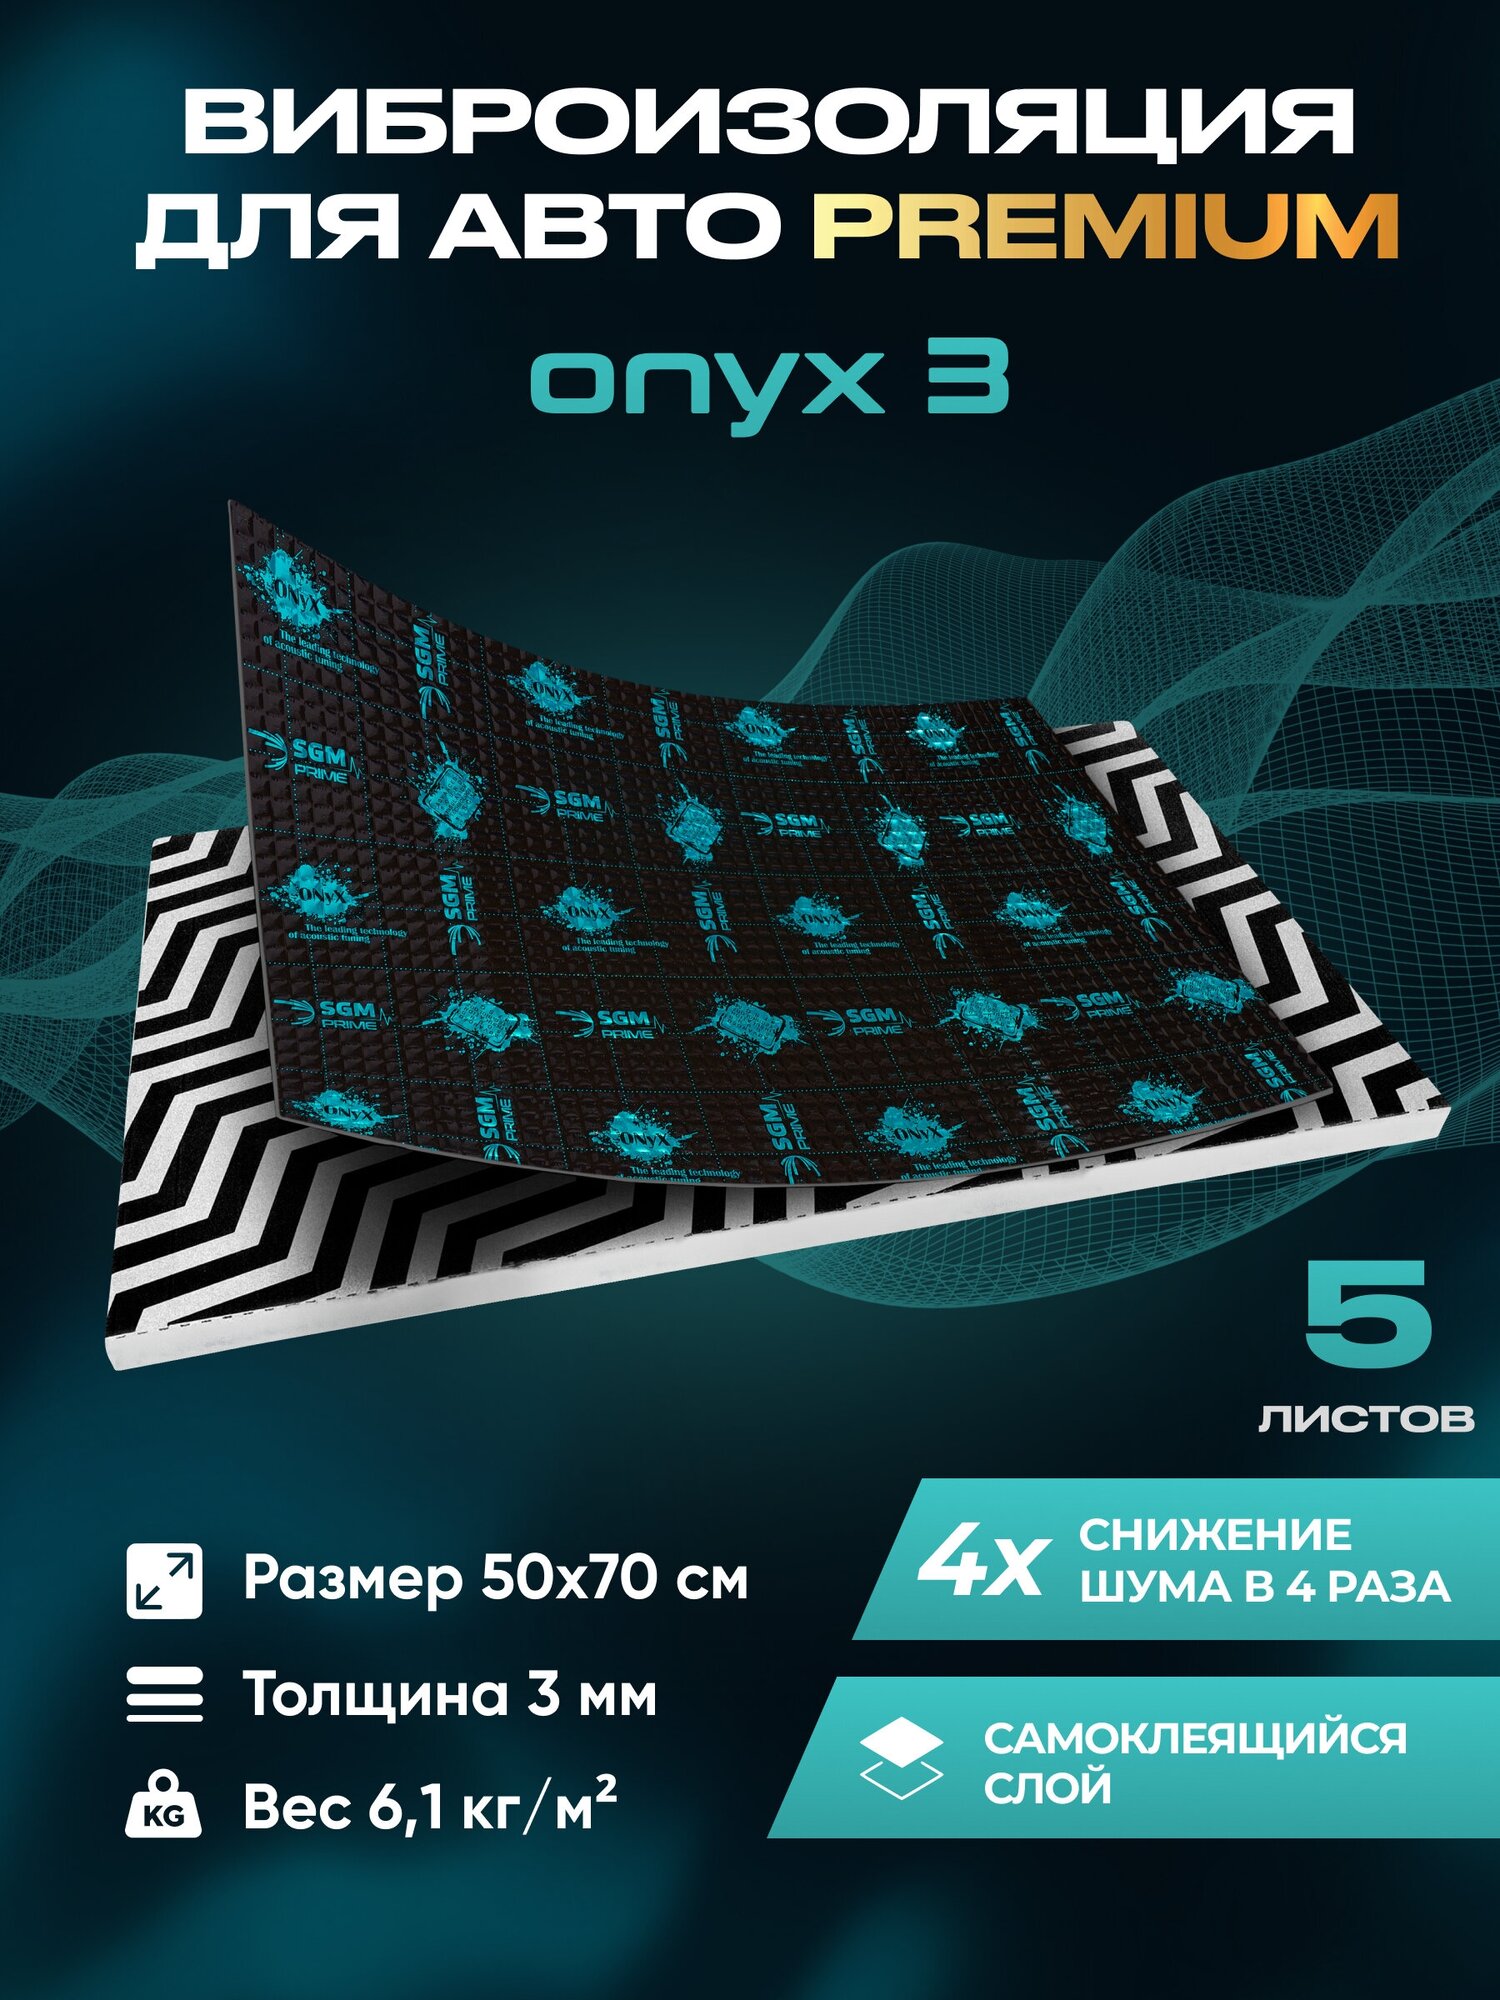 Виброизоляция Premium SGM Prime Onyx 3, упаковка- 5 листов (Большие листы 0.5х0.7) /Набор звукоизоляции/комплект самоклеящаяся шумка для авто